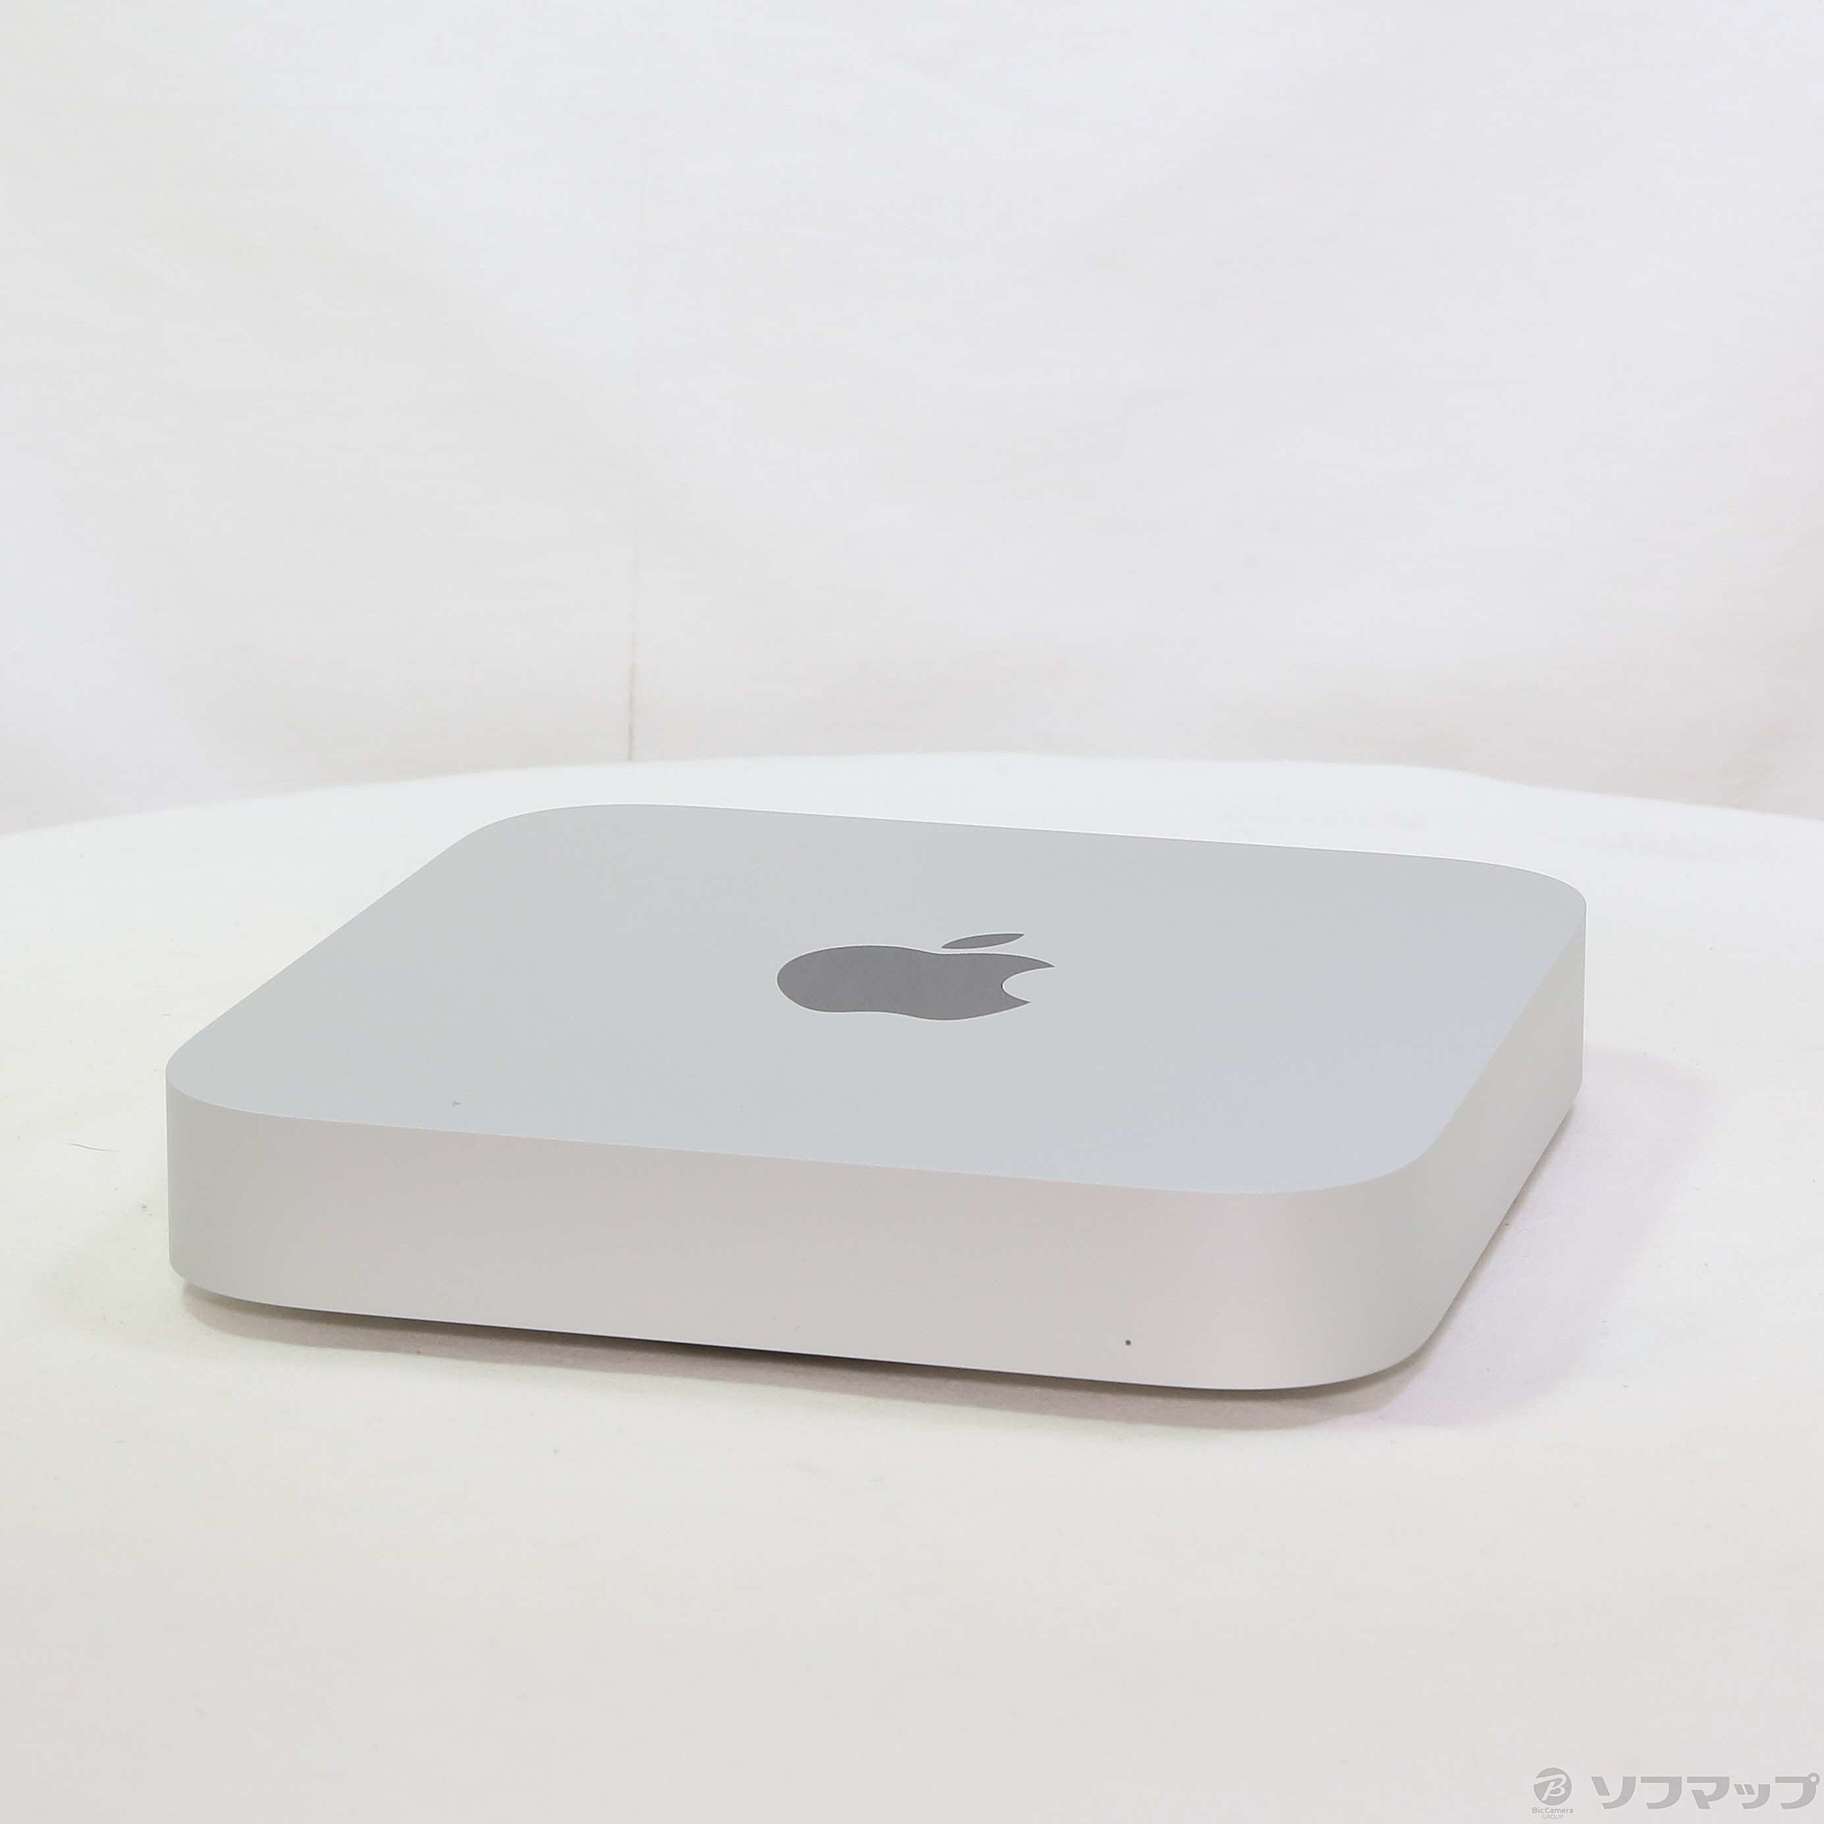 Apple Mac mini 2020